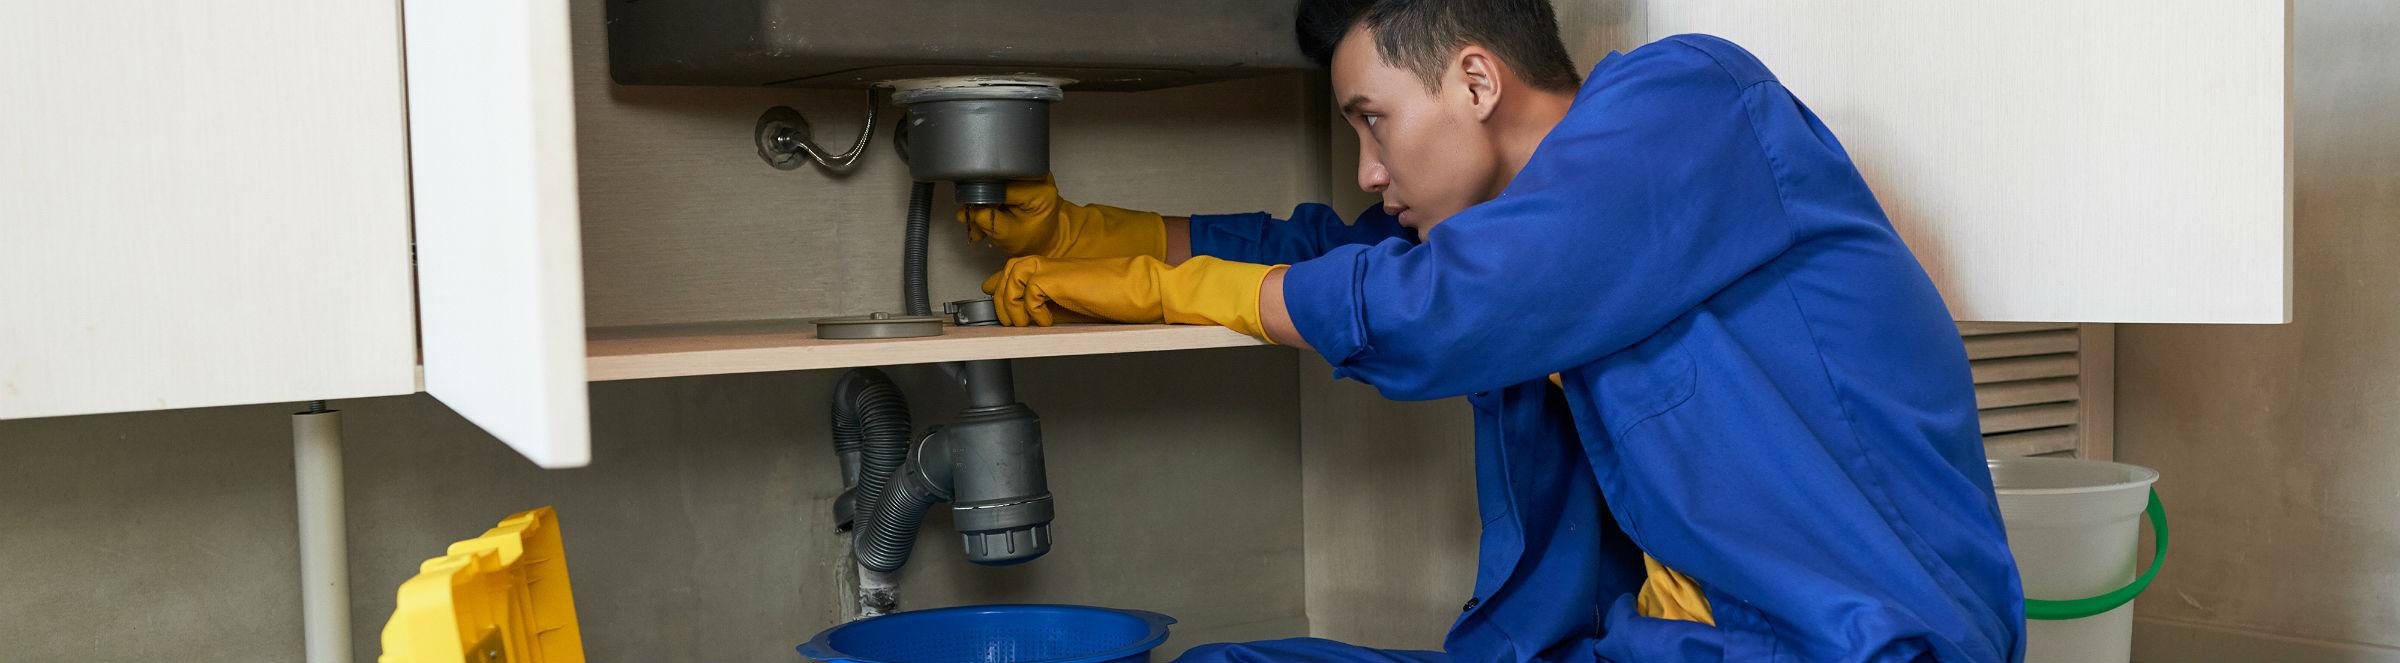 Un plombier répare un évier dans une cuisine